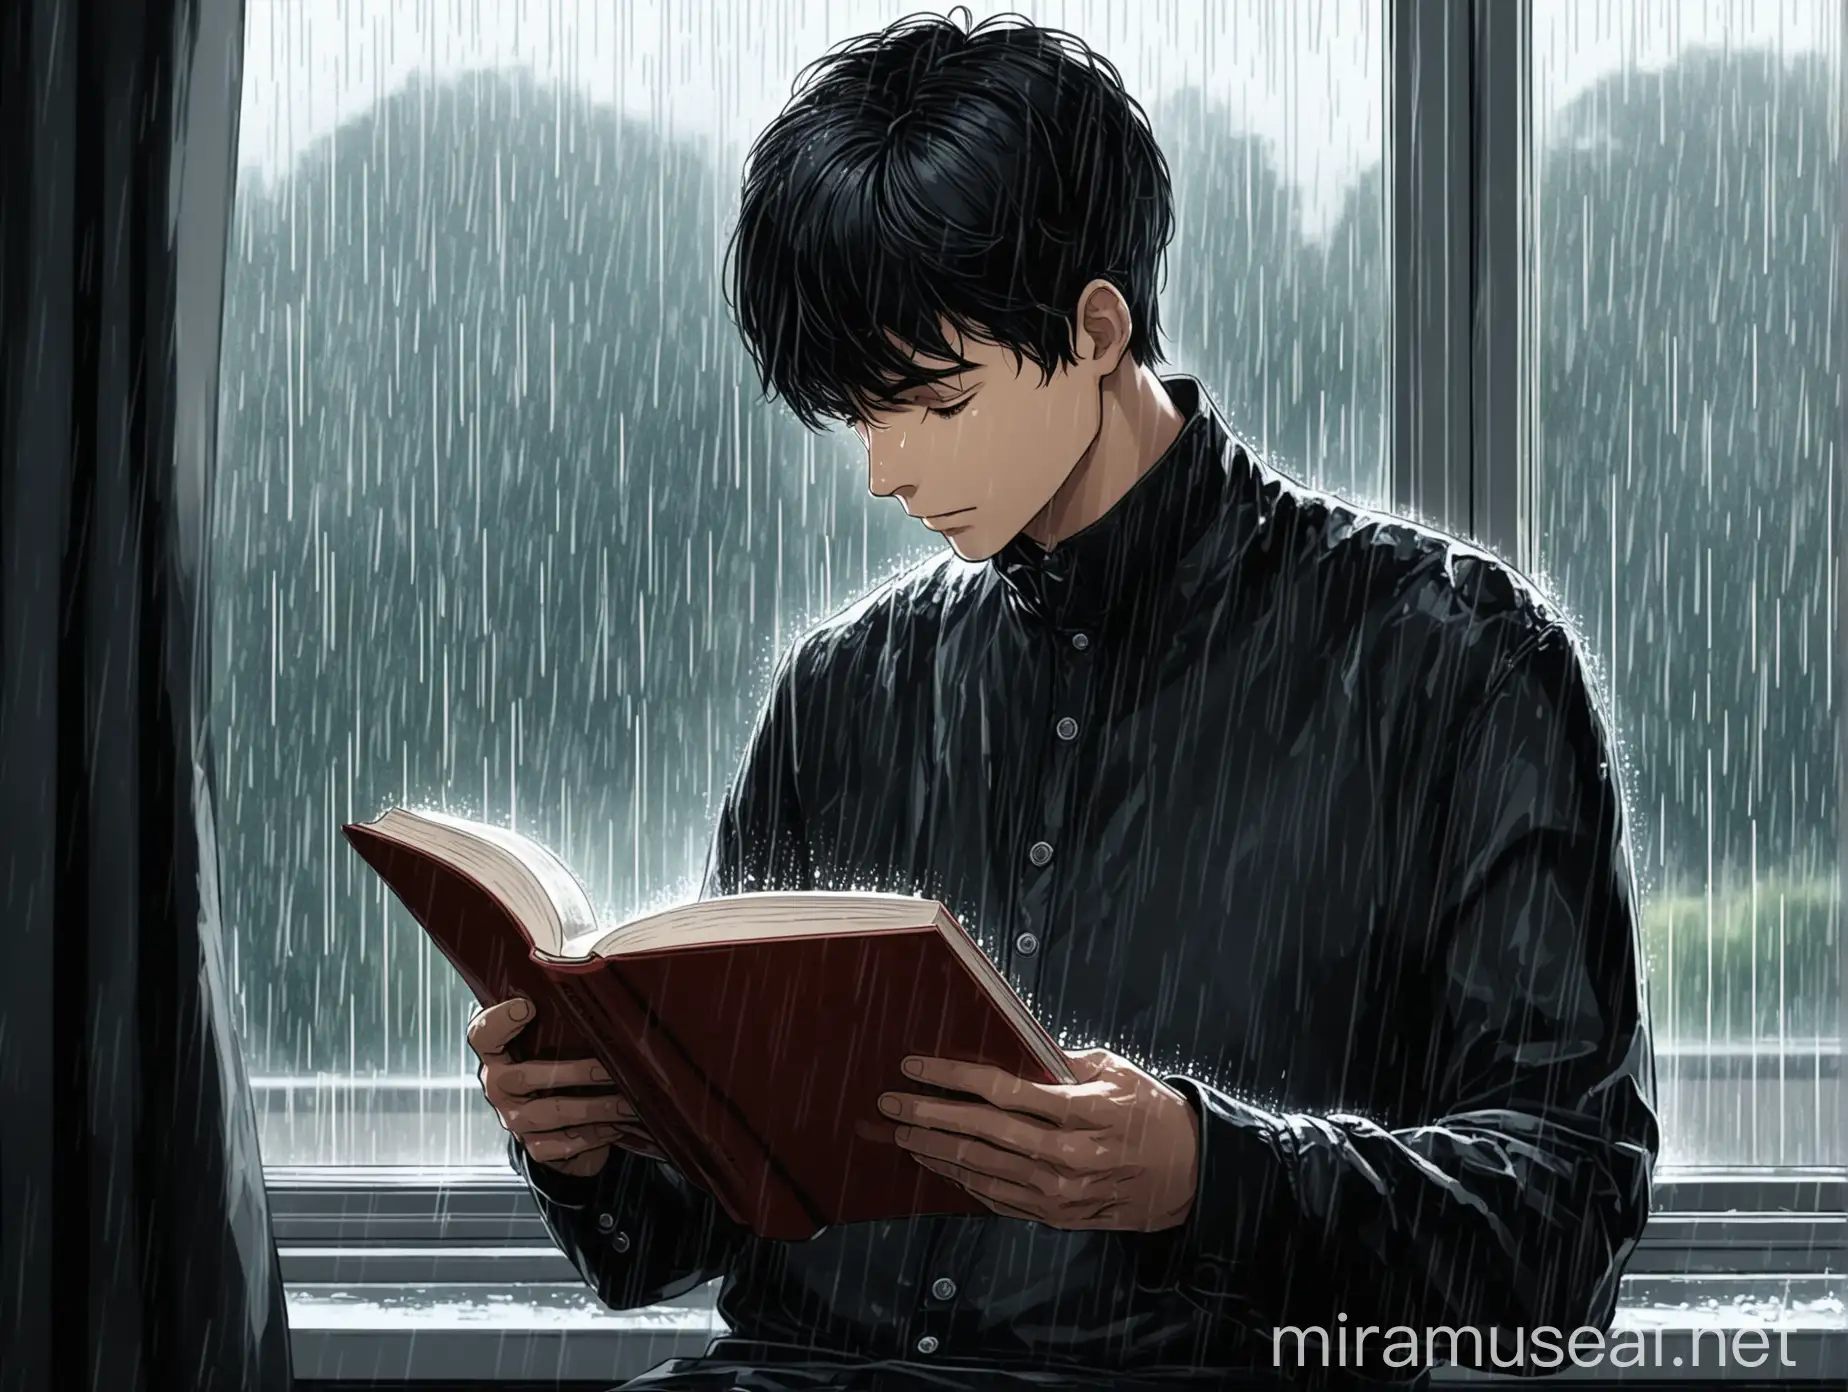 一位身穿现在服饰的男性，一头黑色短发，在窗边读书，窗外下着雨